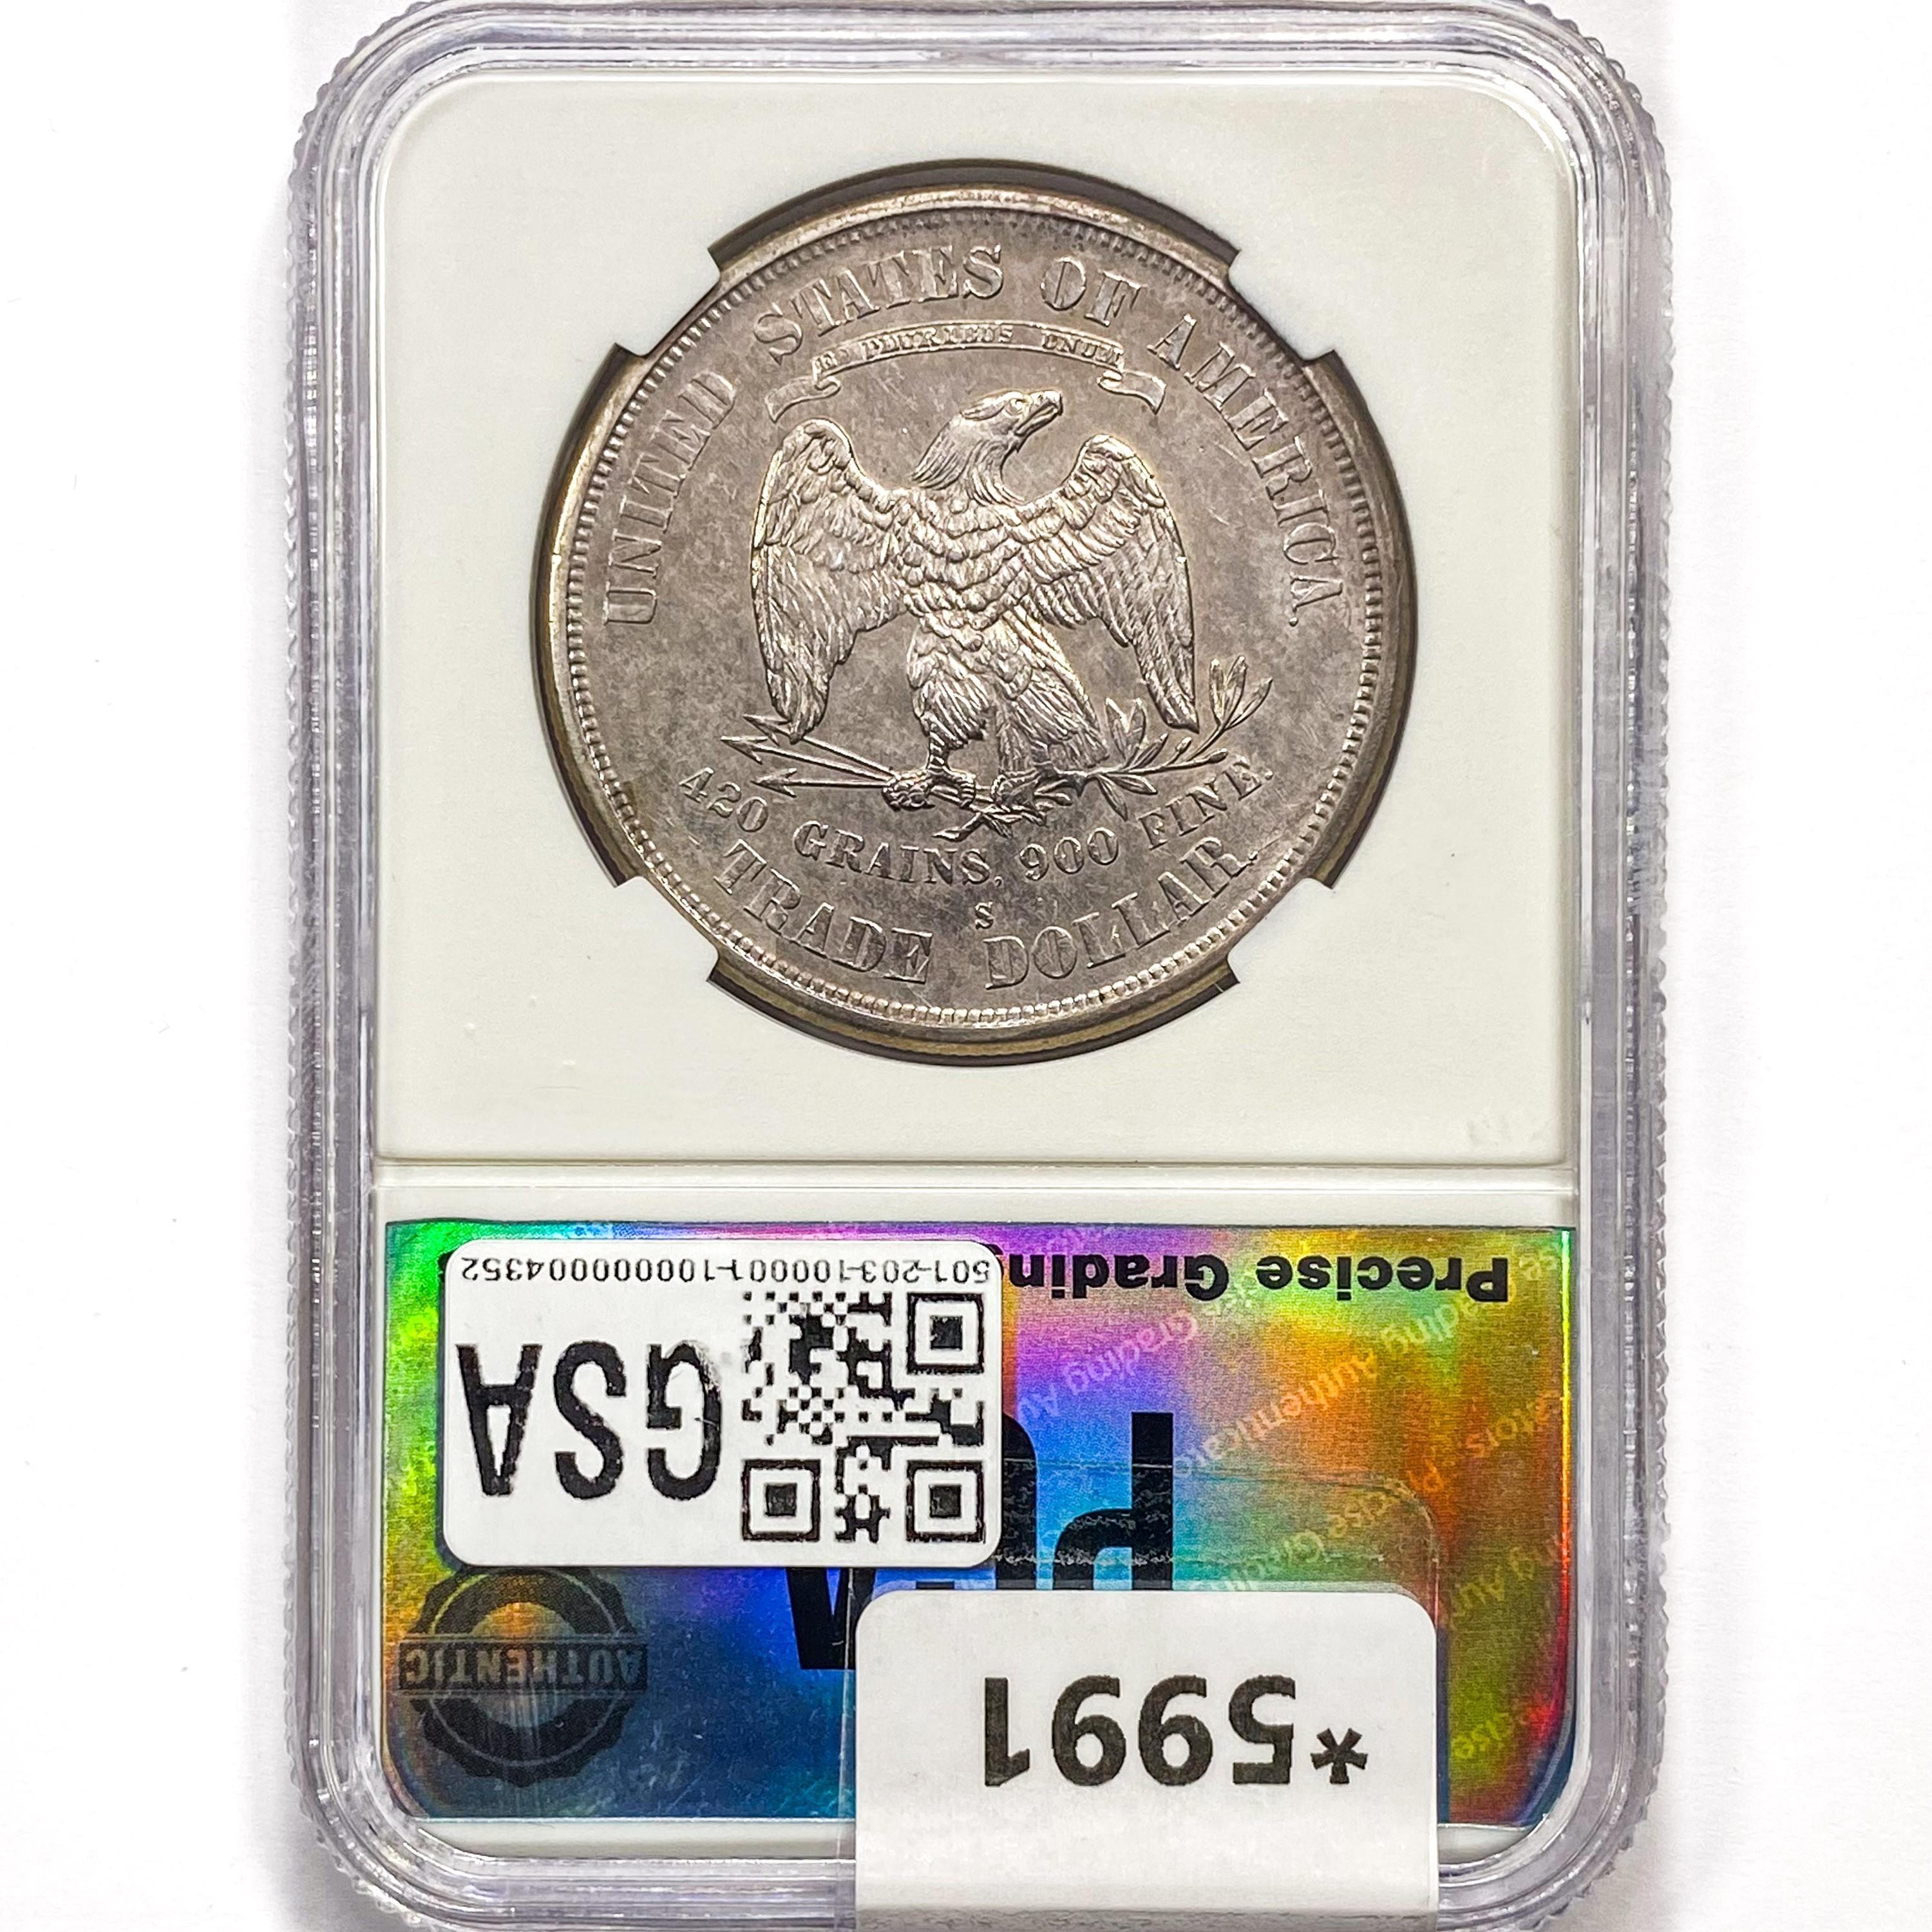 1875-S Silver Trade Dollar PGA MS63+